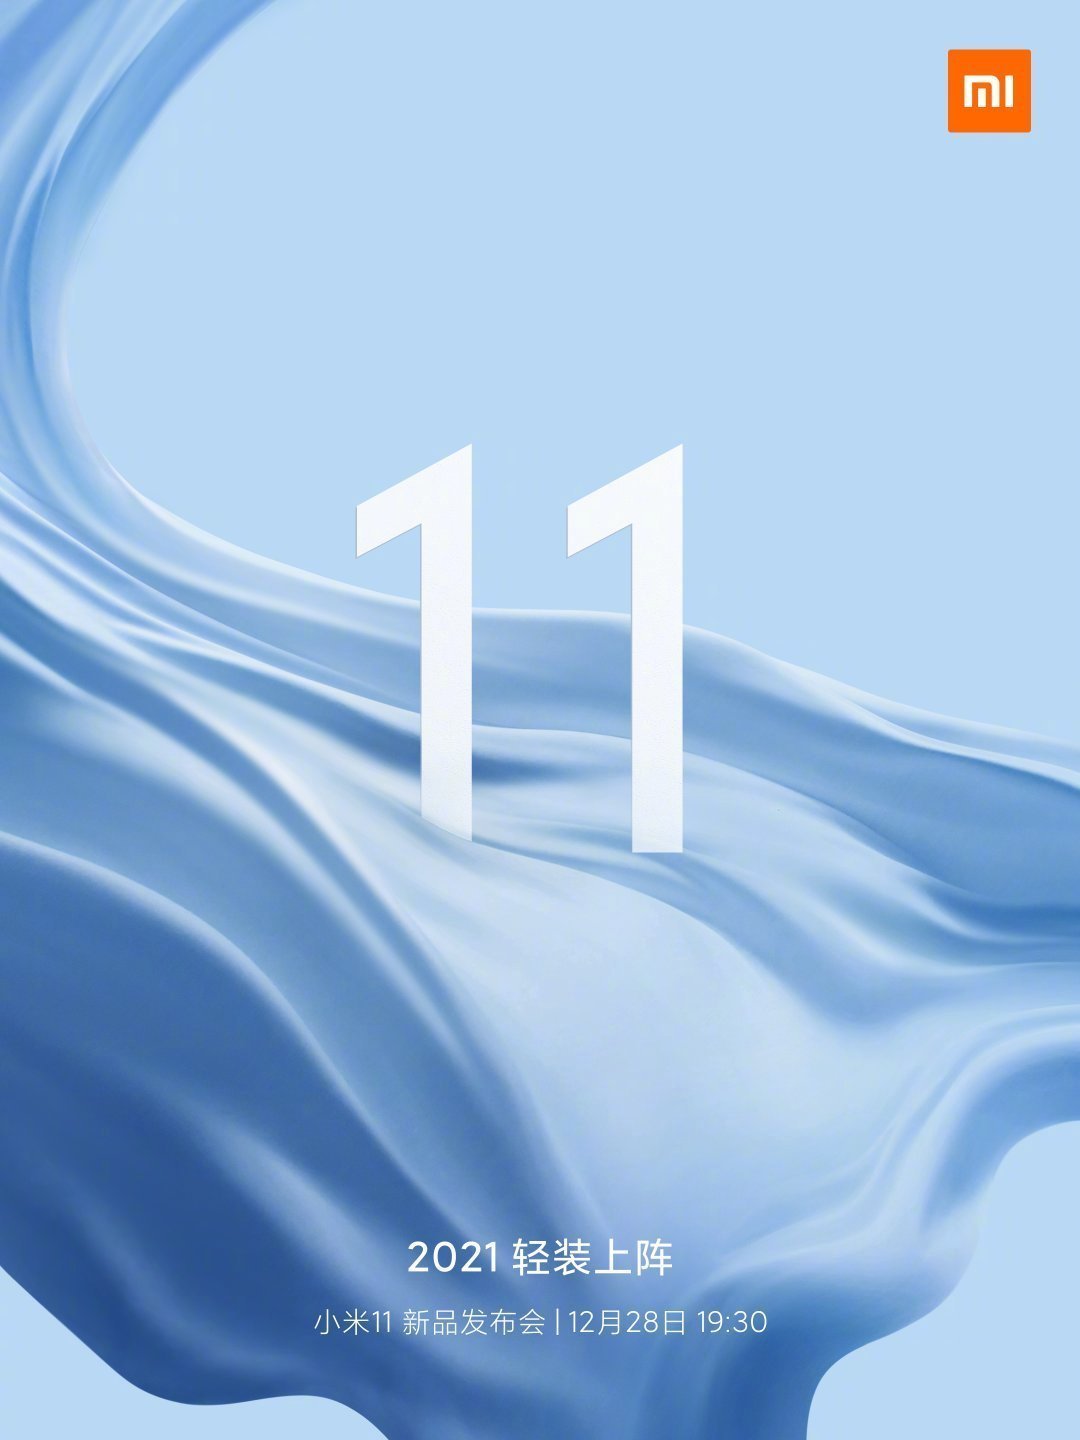 Xiaomi Mi 11 series launch date is December 28